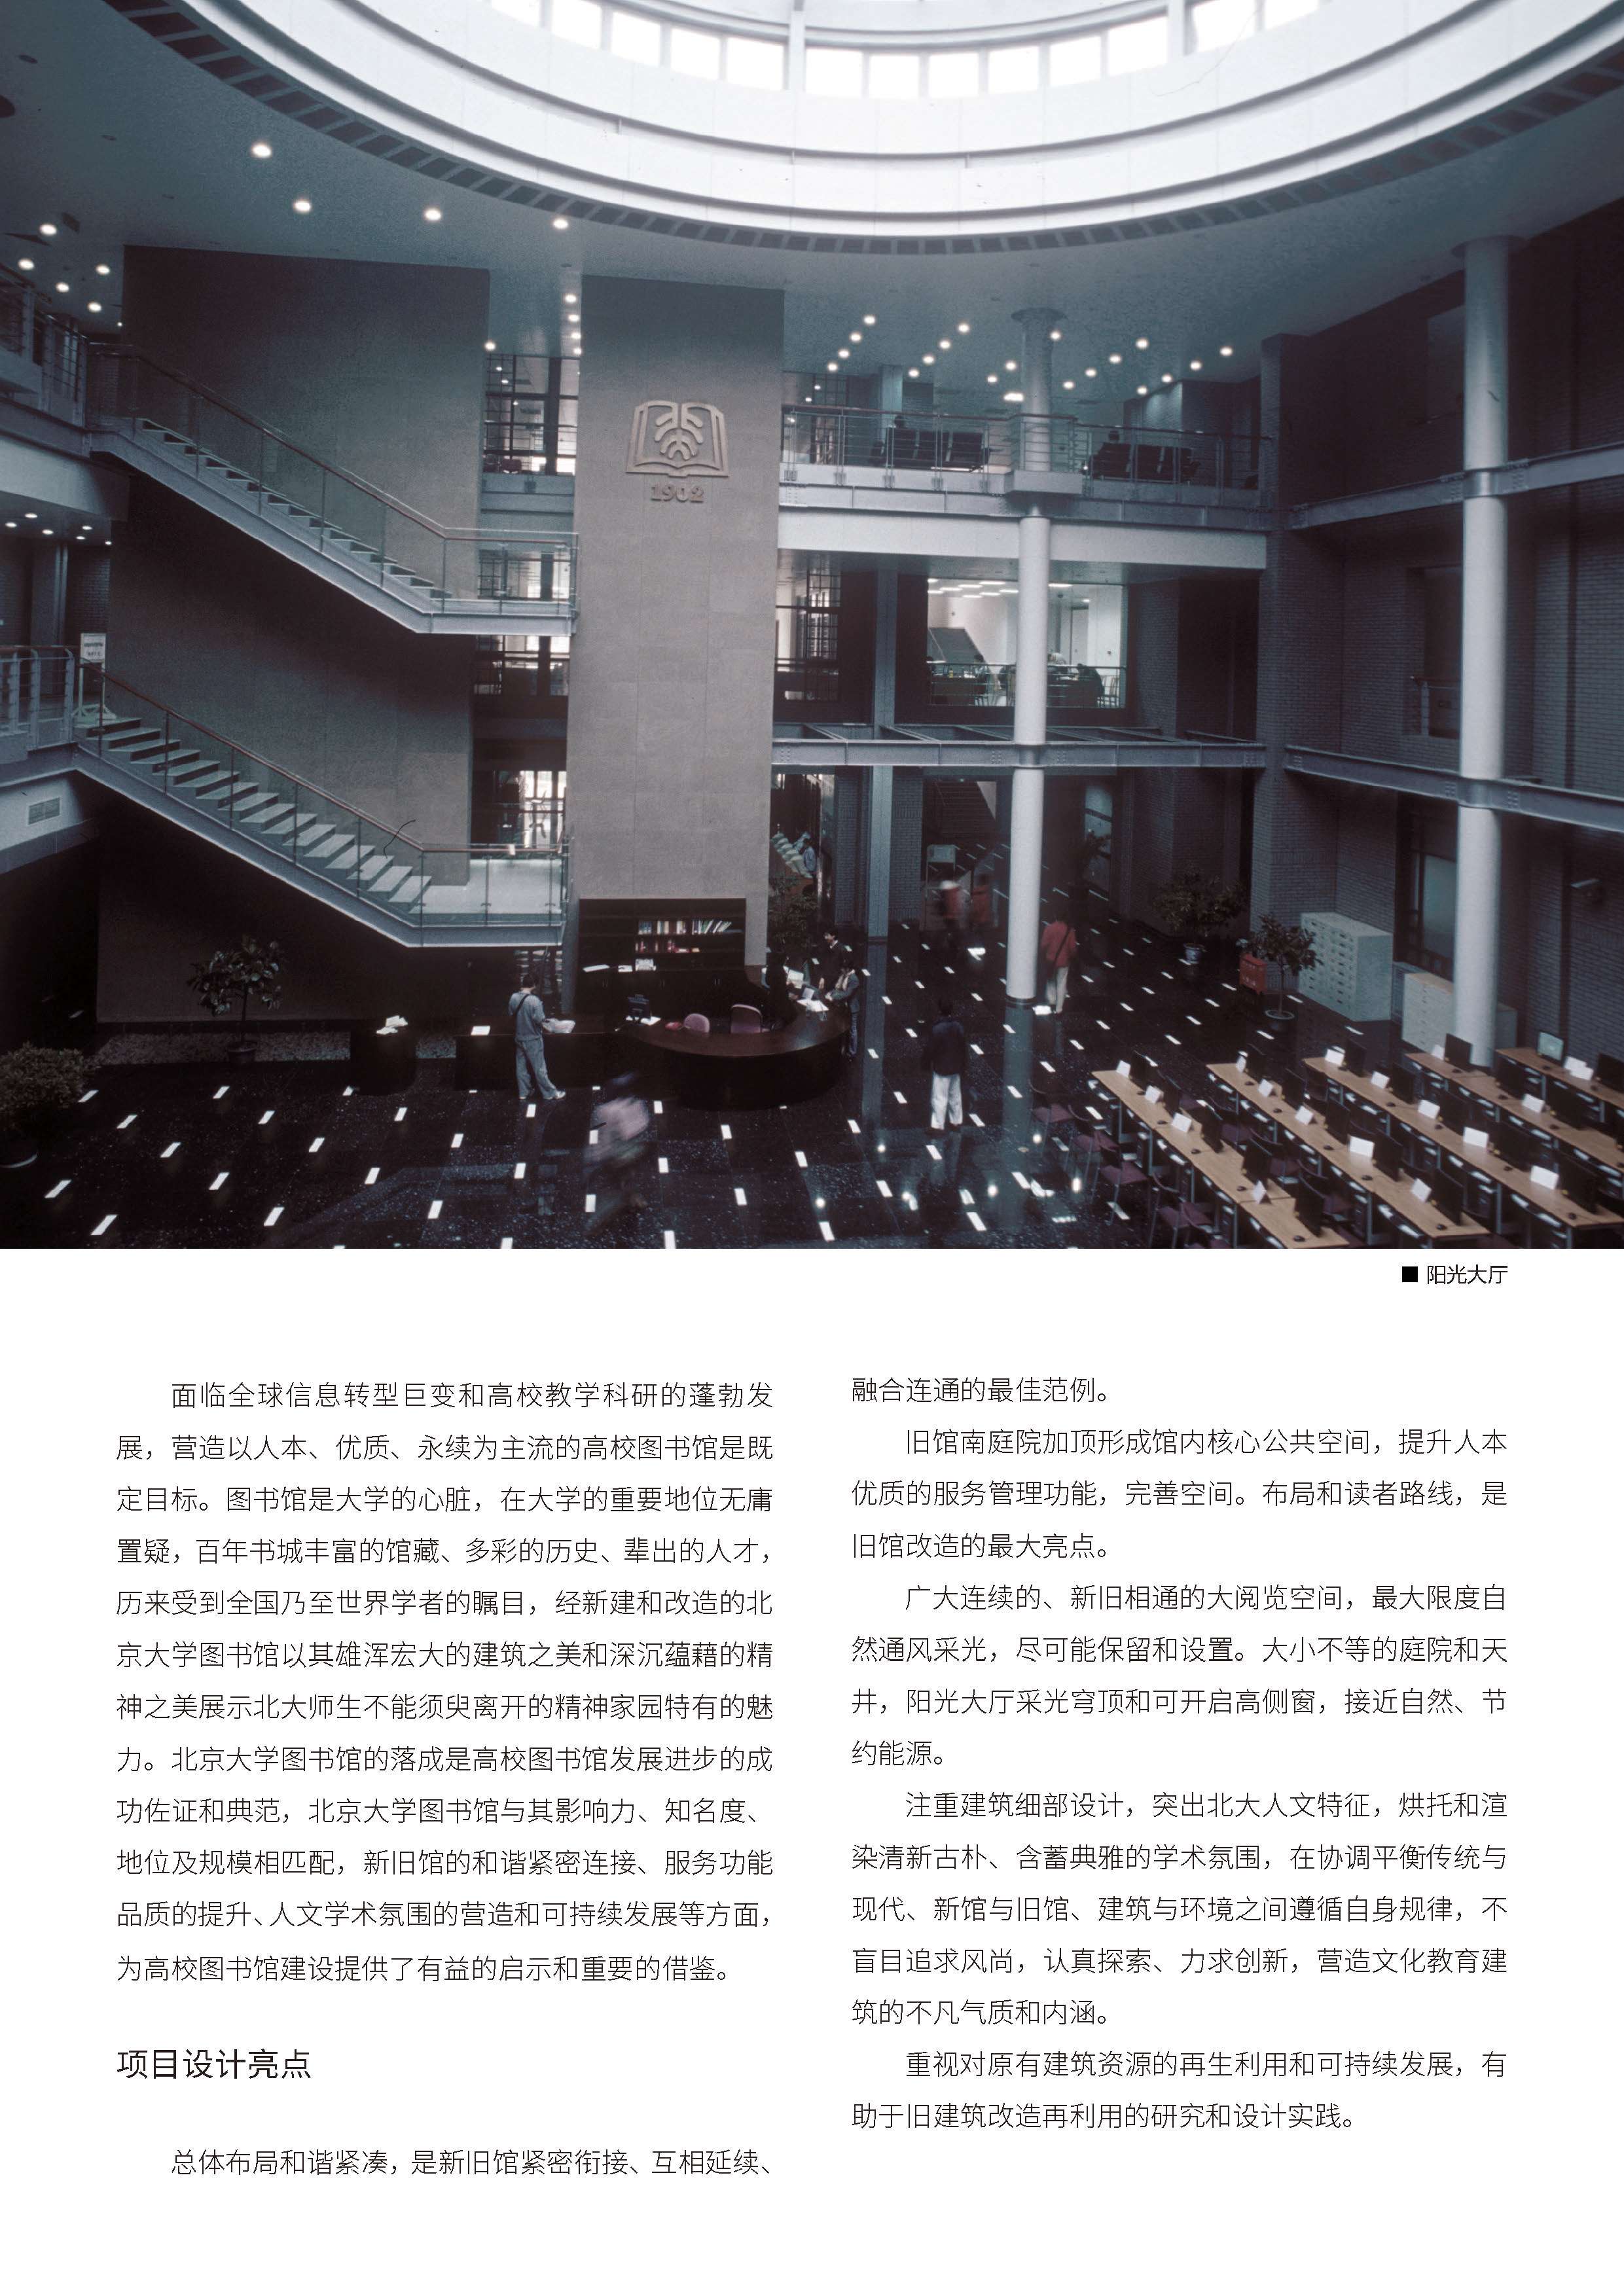 北京大学图书馆_页面_05.jpg